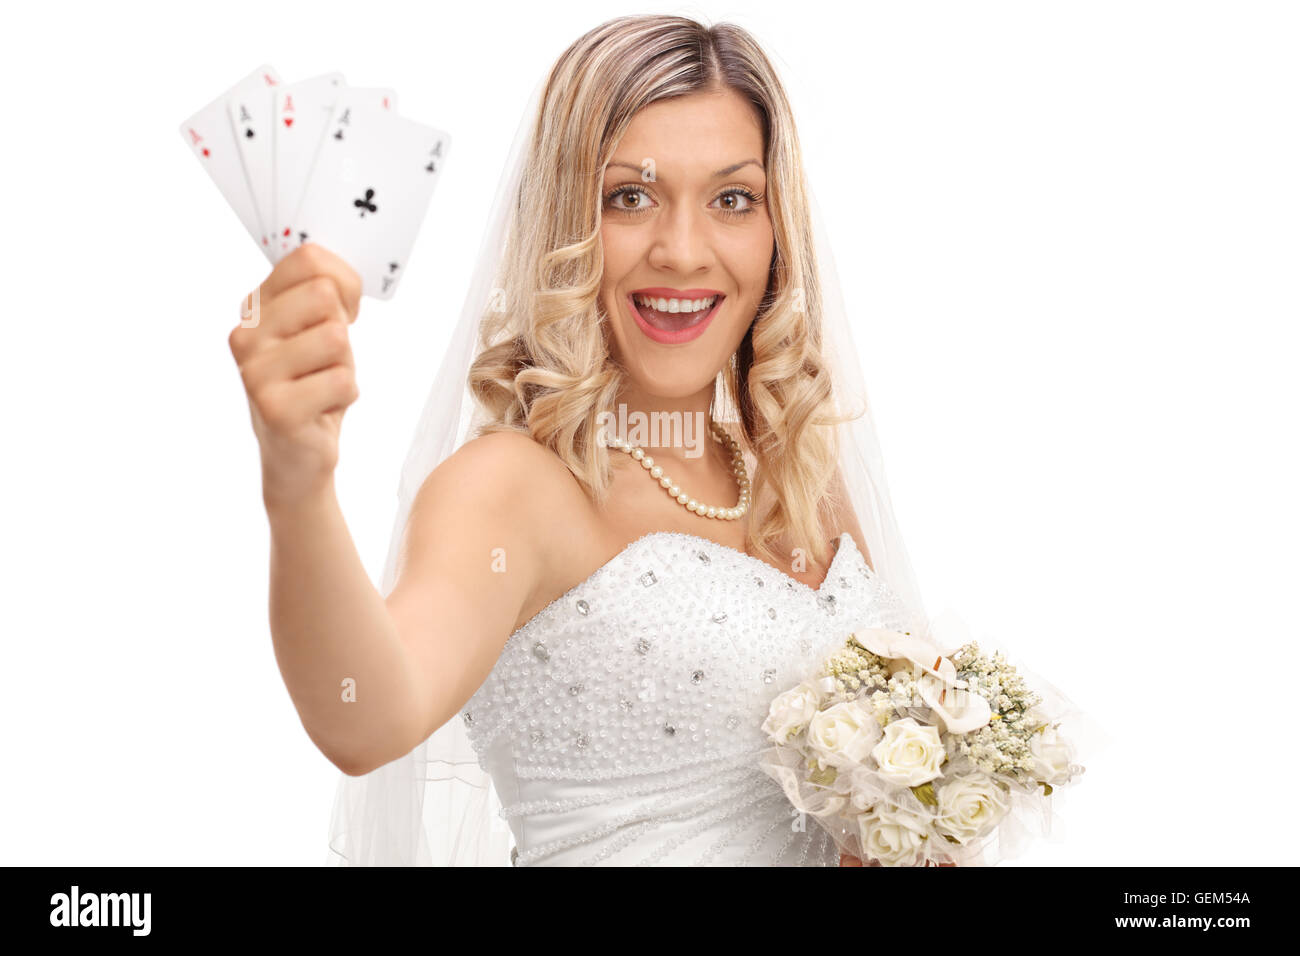 Blonde bride joyeuse dans une robe de mariage tenue quatre as isolé sur fond blanc Banque D'Images